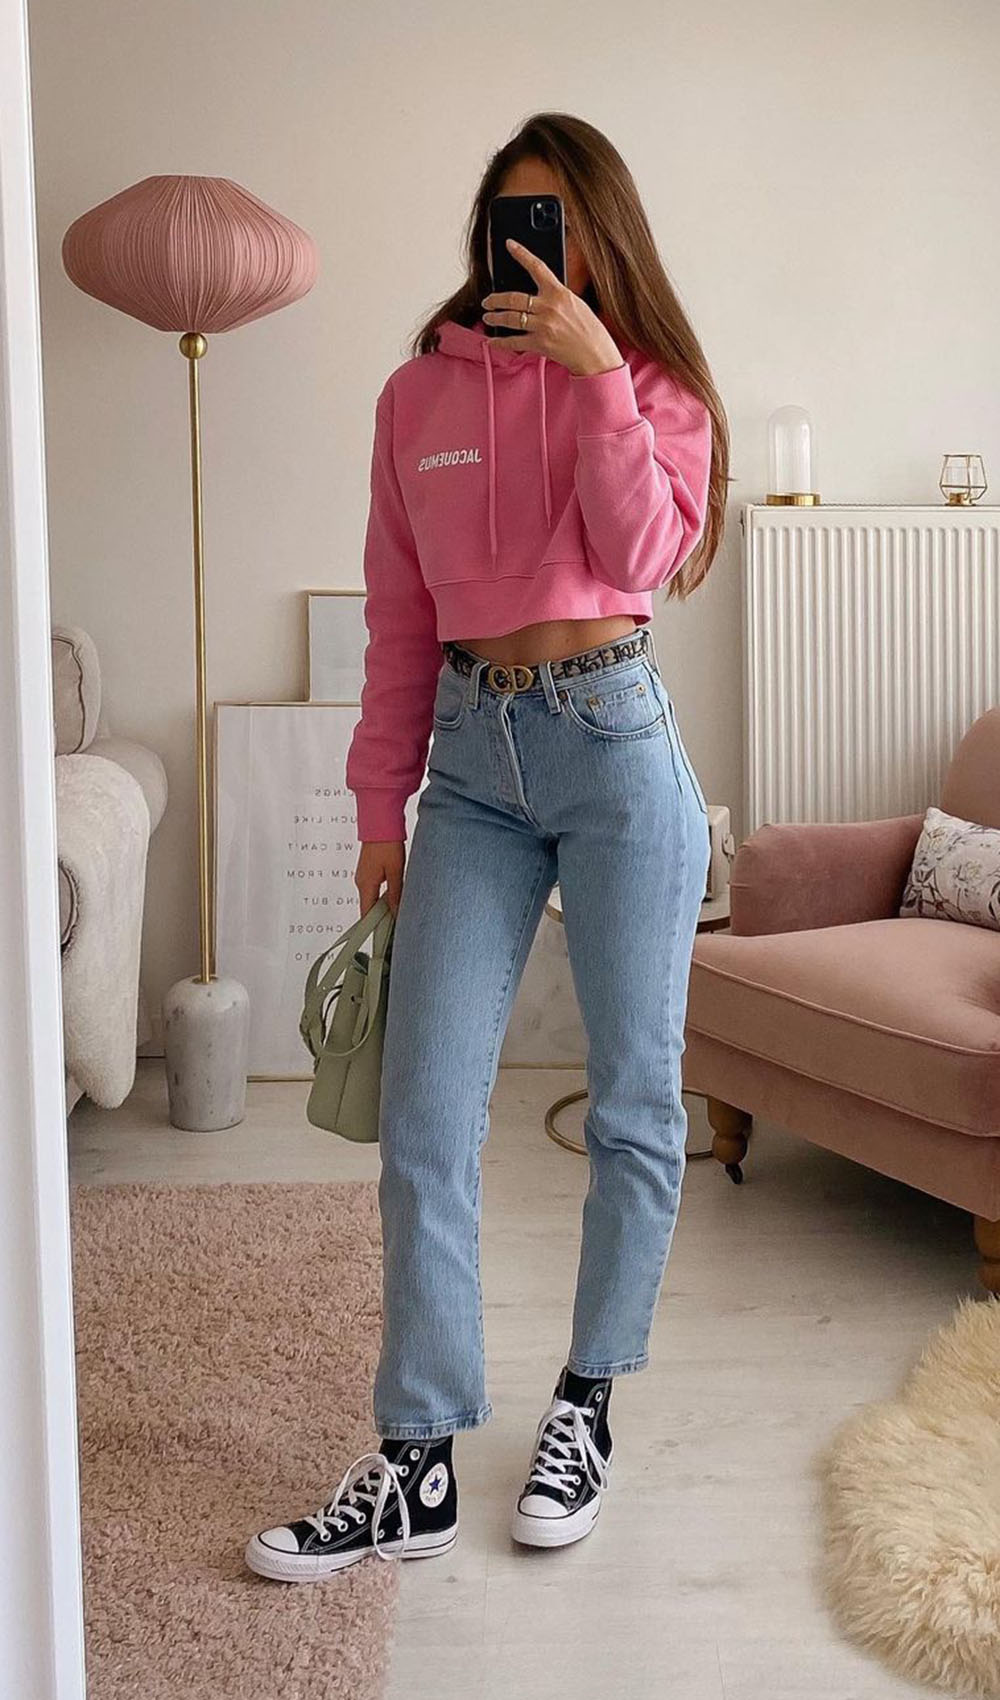 blusa de moletom rosa, mom jeans e tênis preto